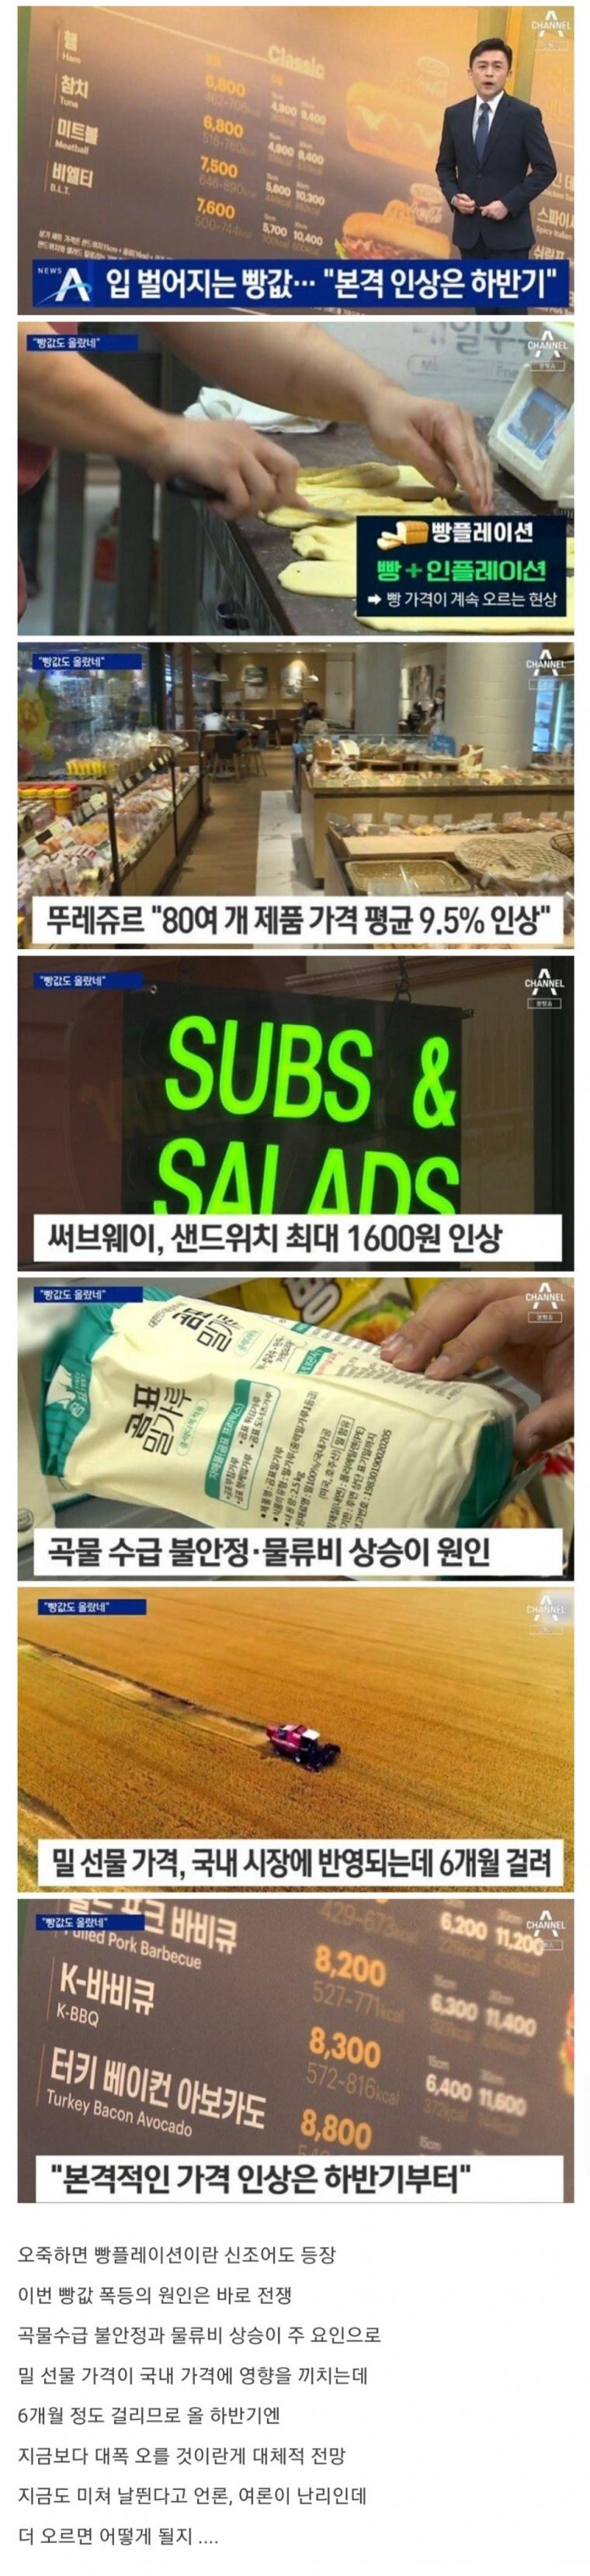 앞으로 헬게이트 예정된 한국 빵 시장.jpg